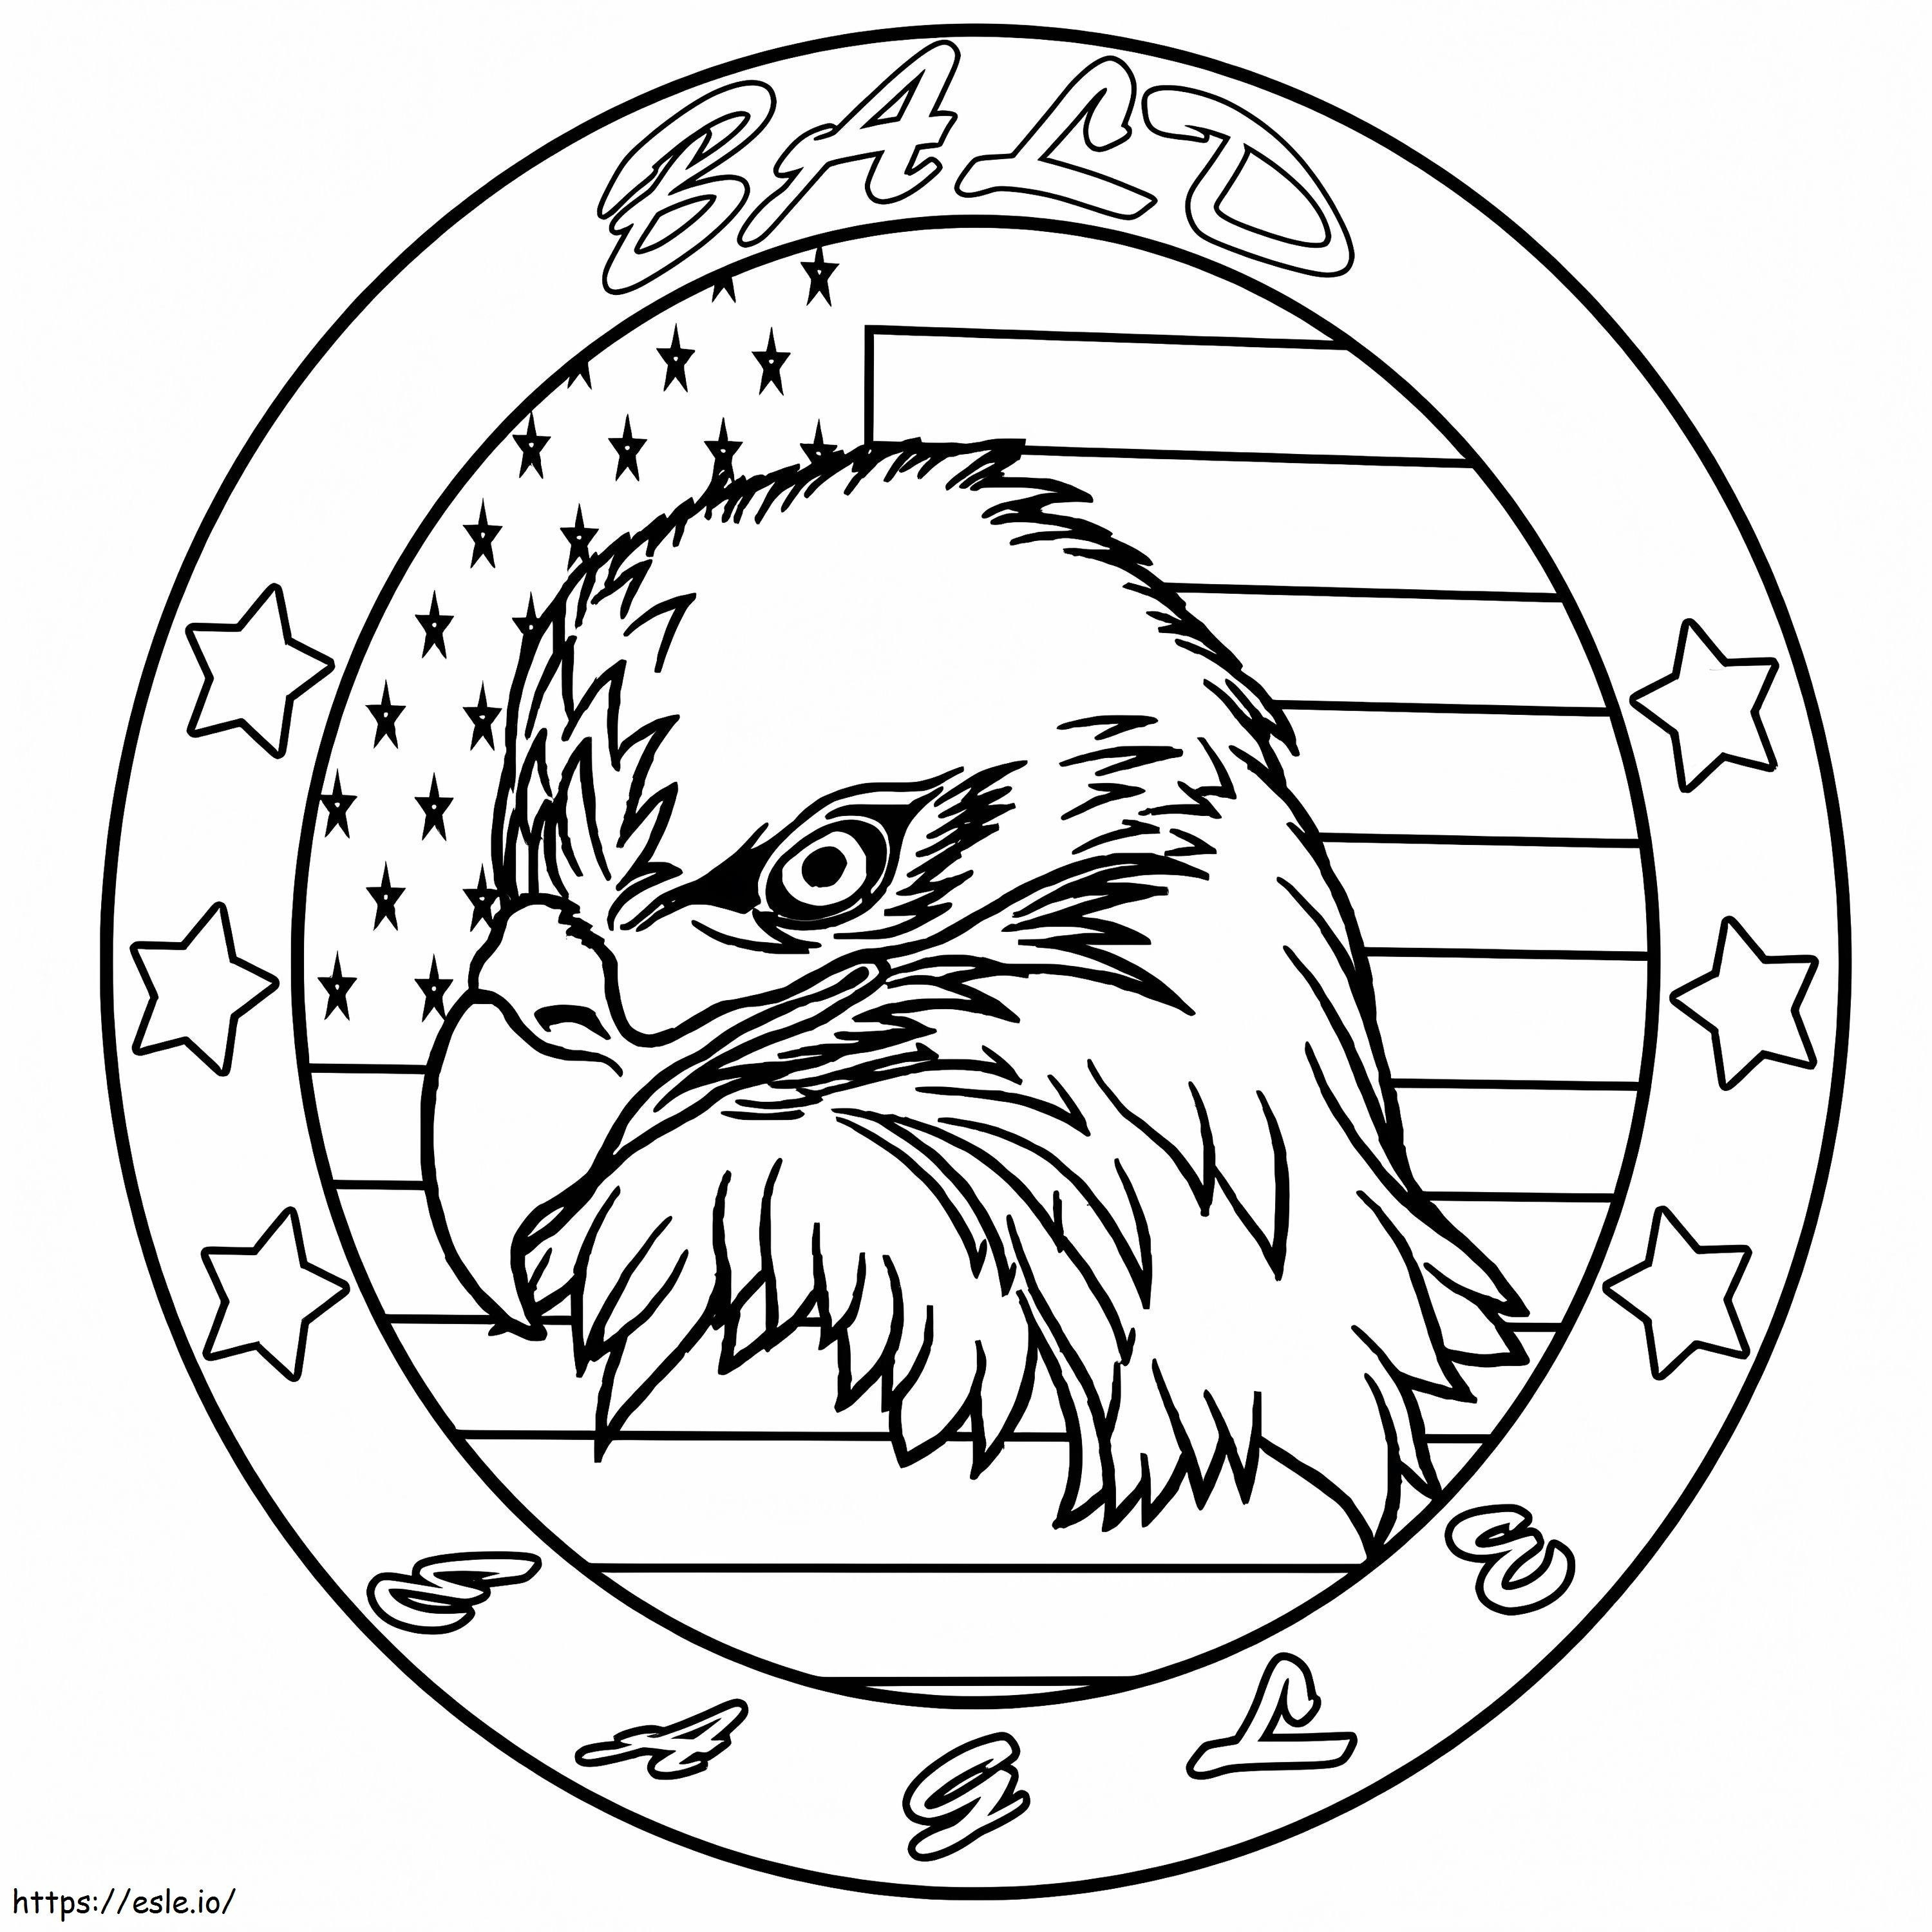 Eagle Symbol coloring page